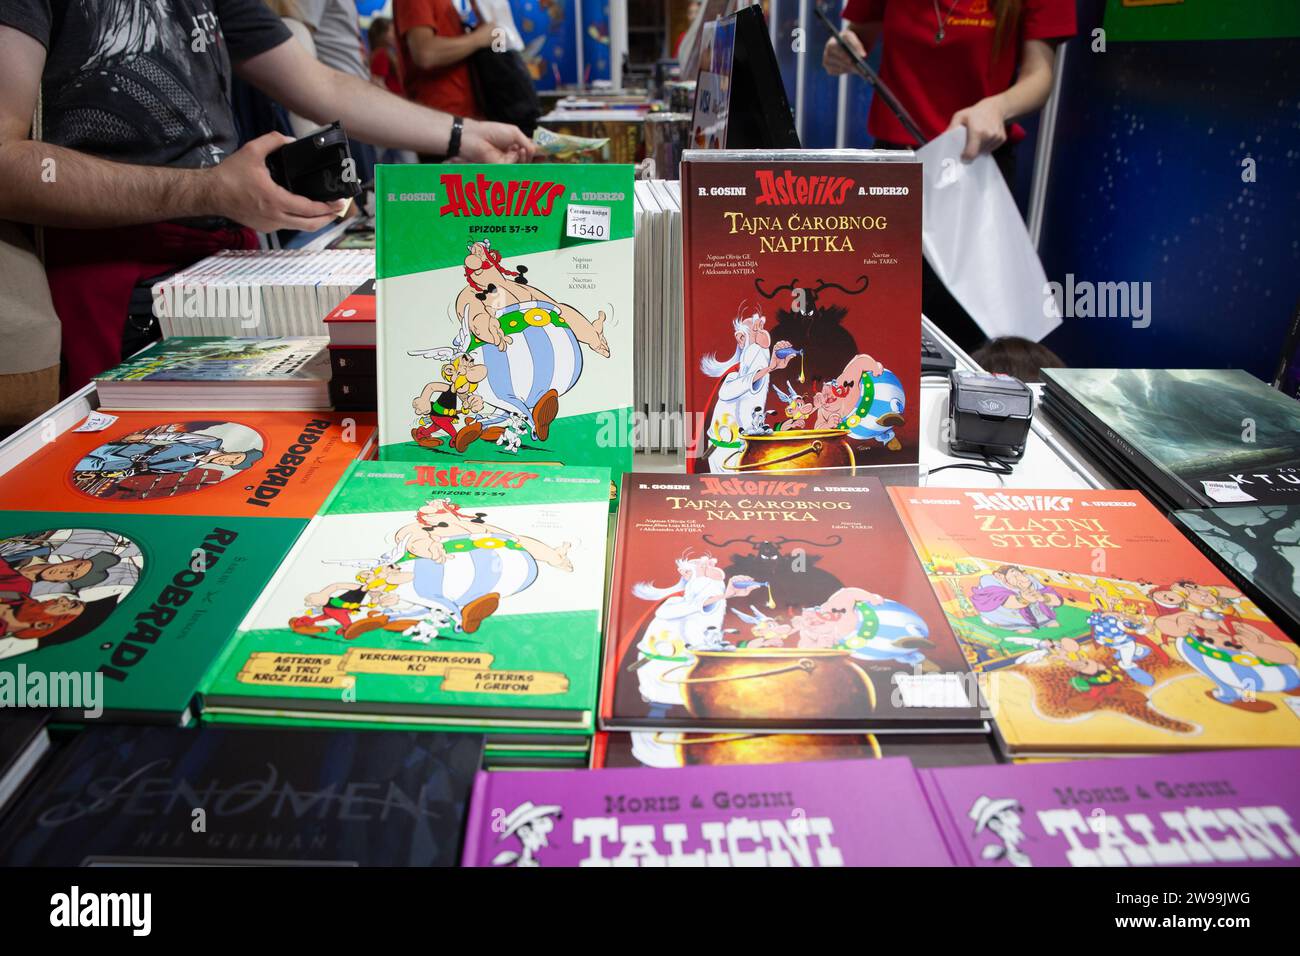 Bild der Bücher Comic-Streifen von Asterix und Obelix zum Verkauf in Belgrad, Serbien. Asterix oder die Abenteuer von Asterix ist ein Bande-dessinée-Comic Stockfoto